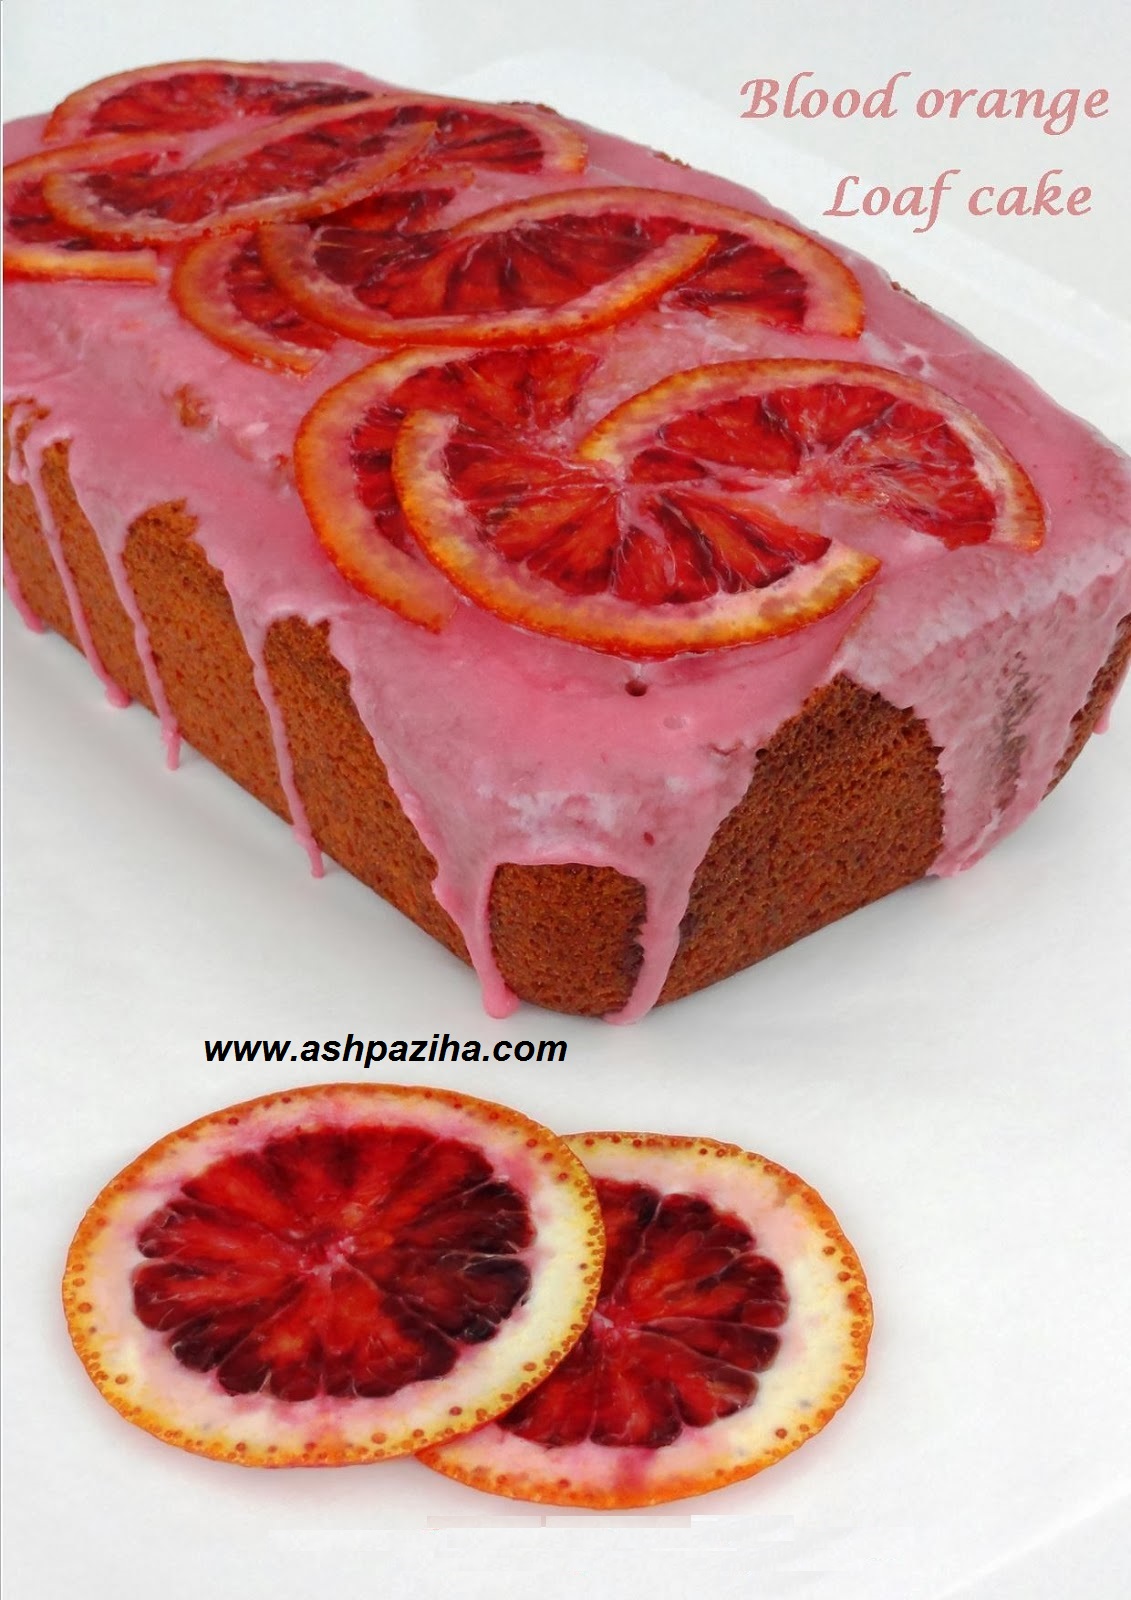 Mode - preparing - cake - Blood orange (1)